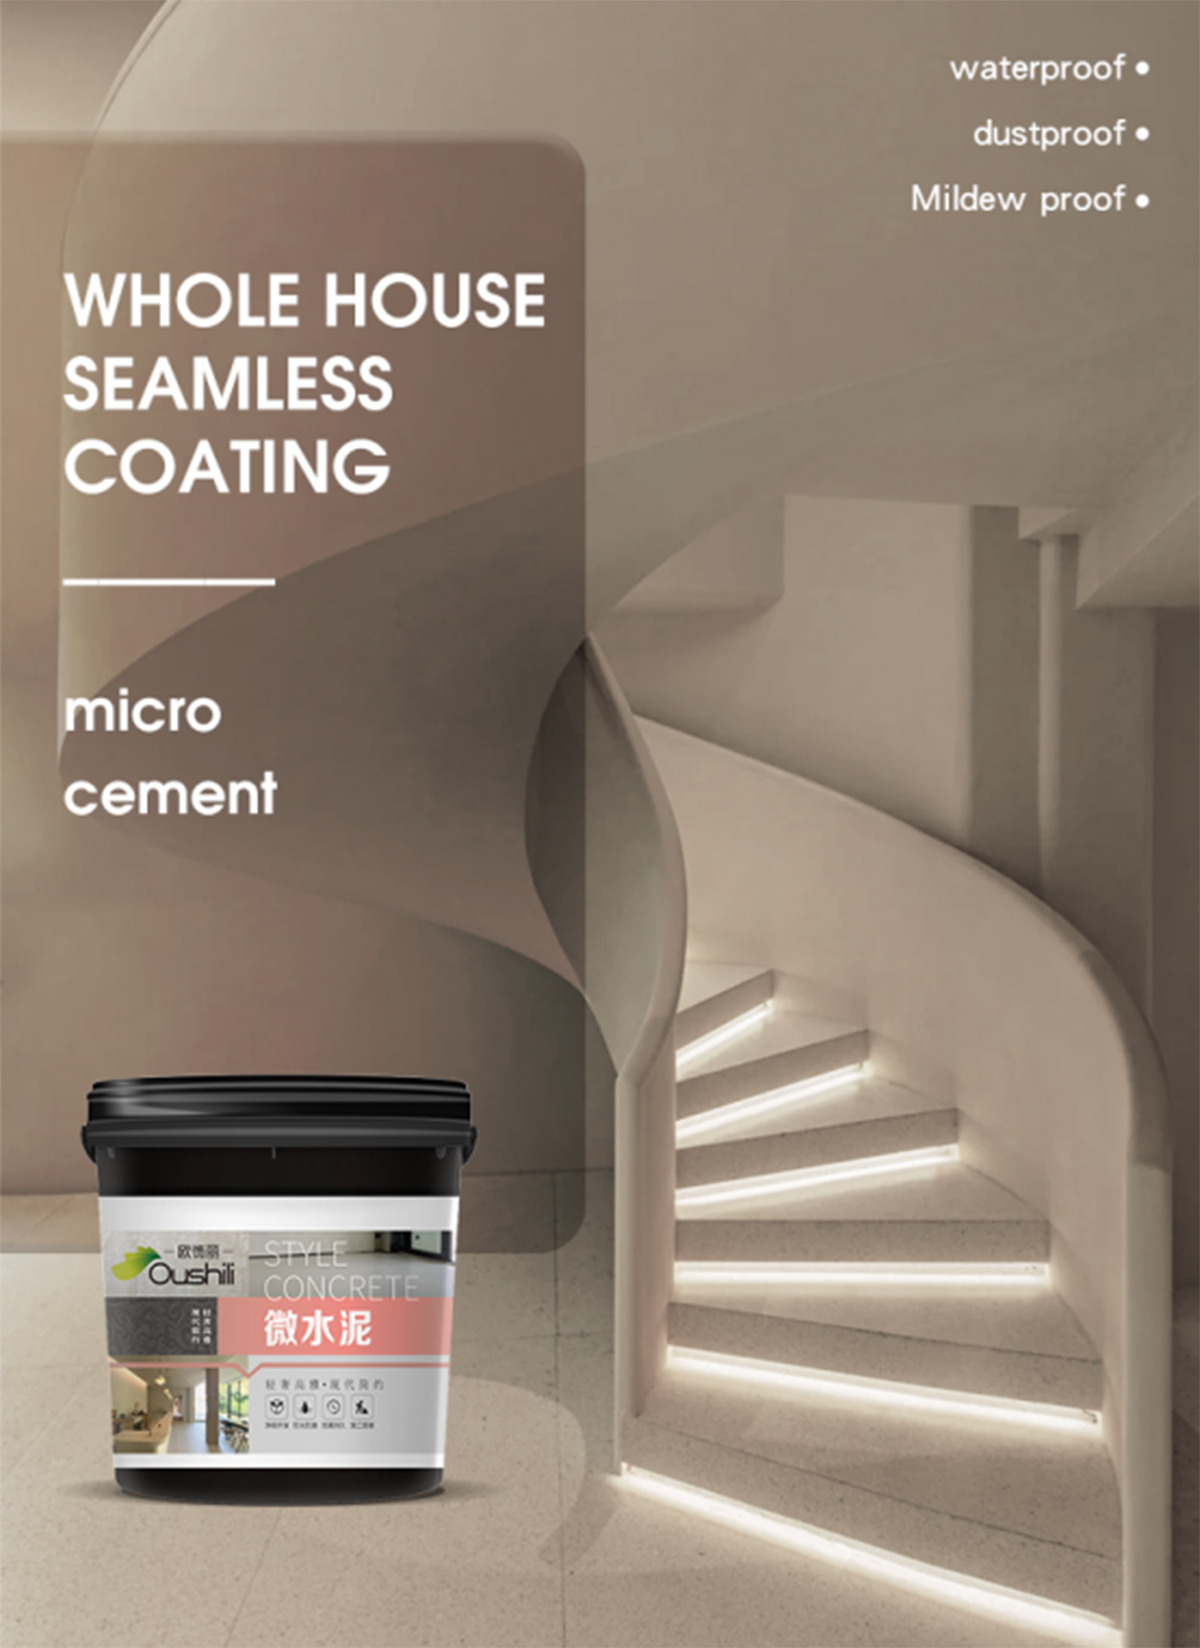 يمكن تطبيق العزل المائي من Xinruili-microcement- على الجدران أو الأرضيات 4